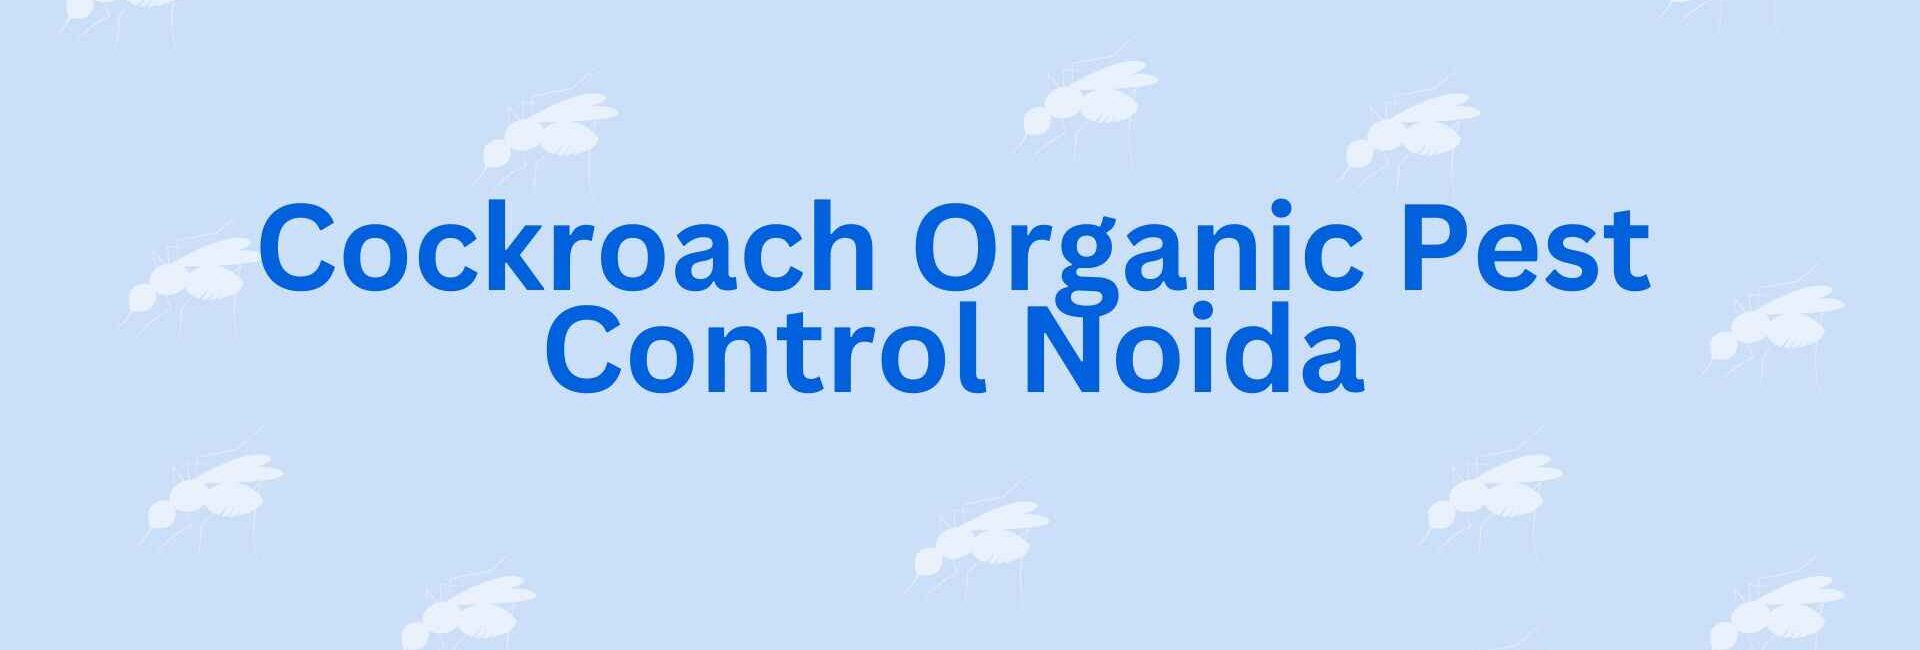 Cockroach Organic Pest Control Noida - Pest Control service in Noida